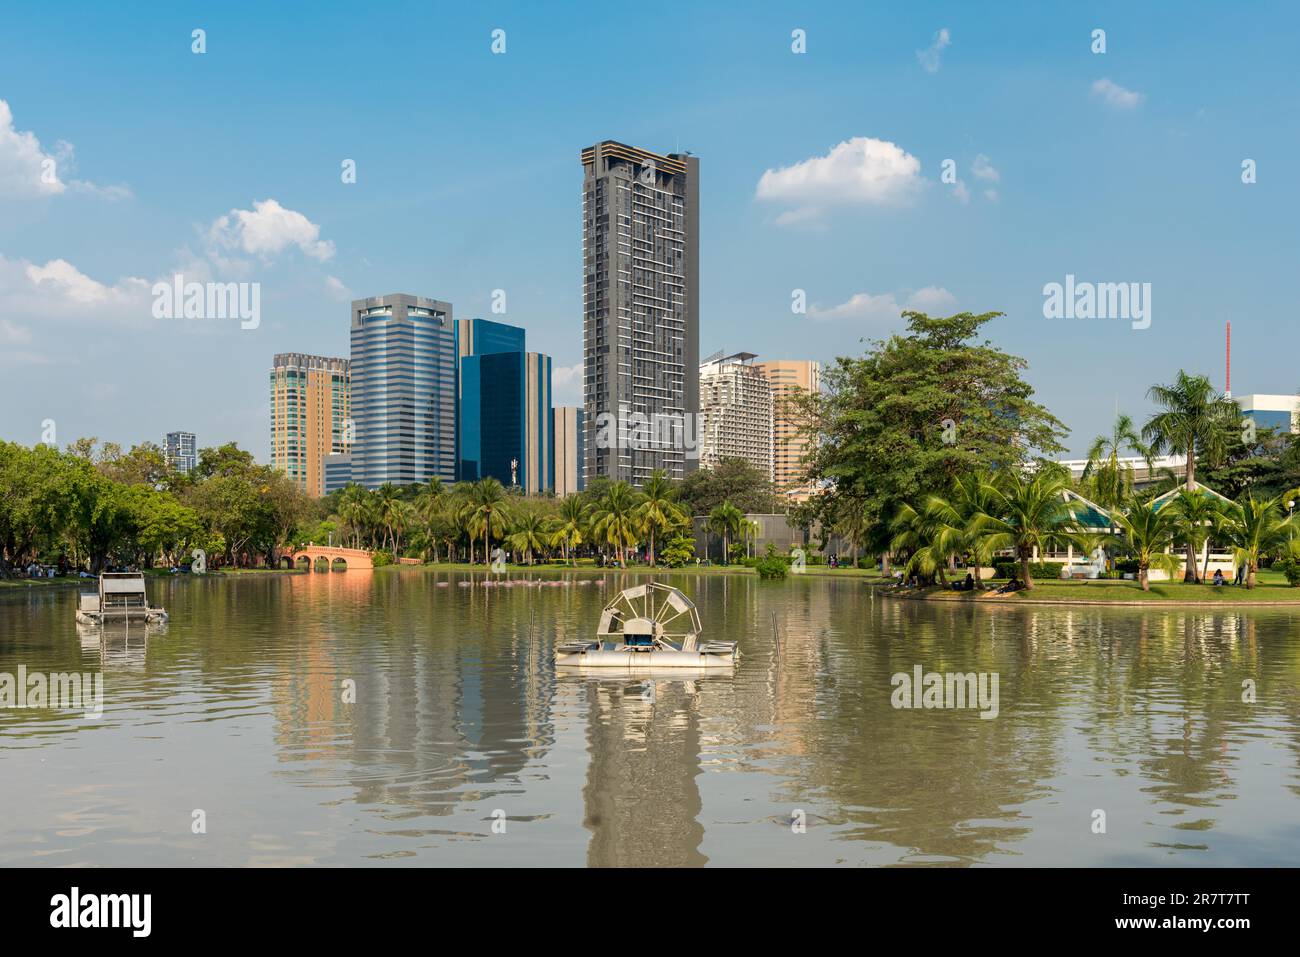 Il parco Chatuchak è uno dei più antichi parchi pubblici di Bangkok. Un lago artificiale corre lungo questo parco sottile e lungo con numerosi ponti che attraversano Foto Stock